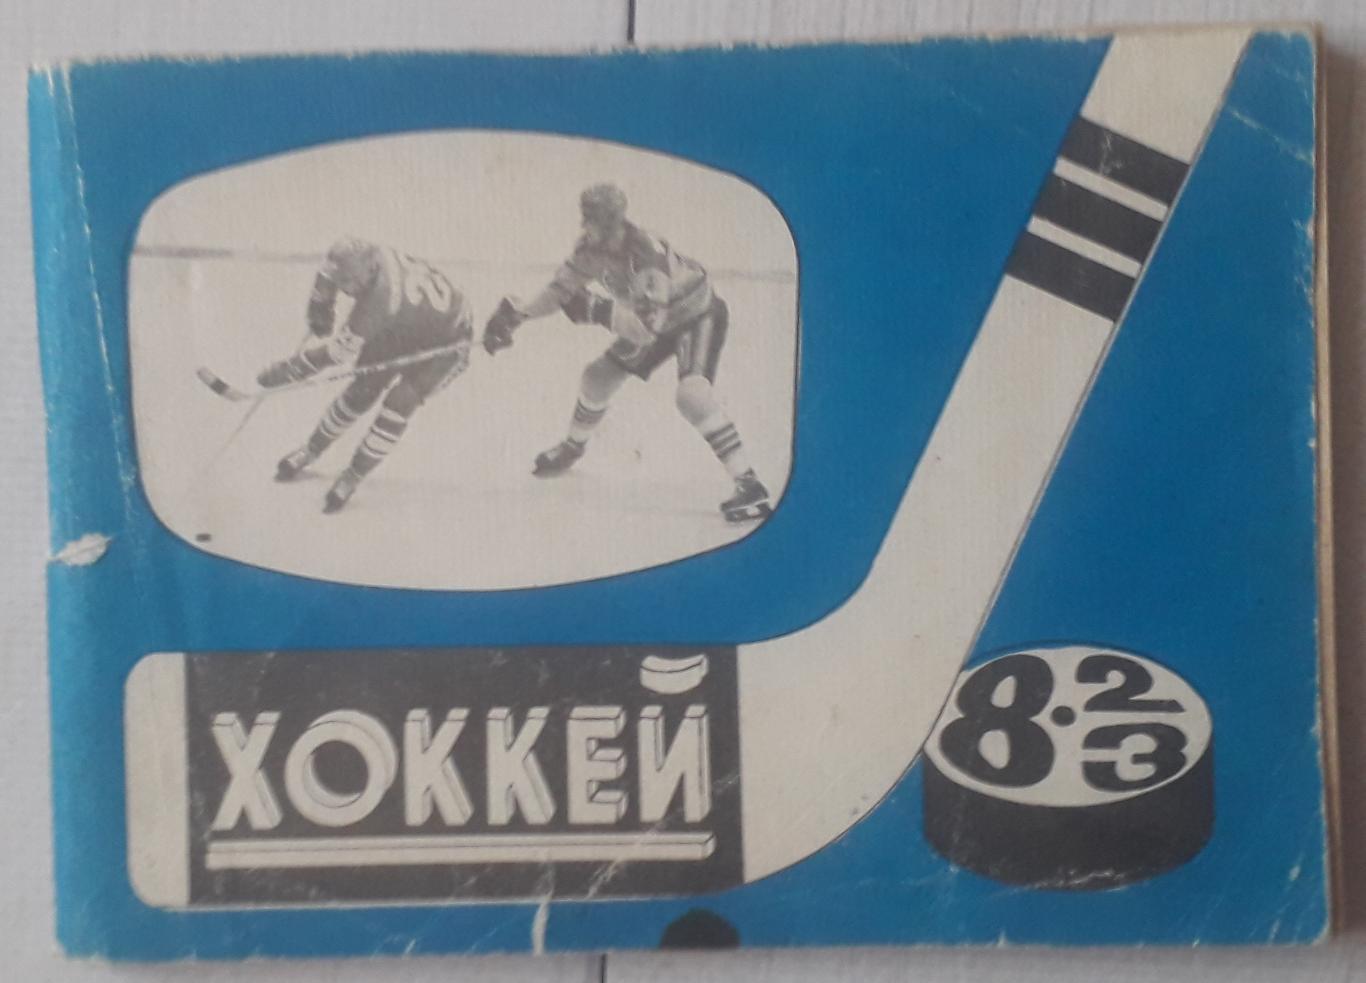 Справочник-календарь. Хоккей 82/83. Московская правда.